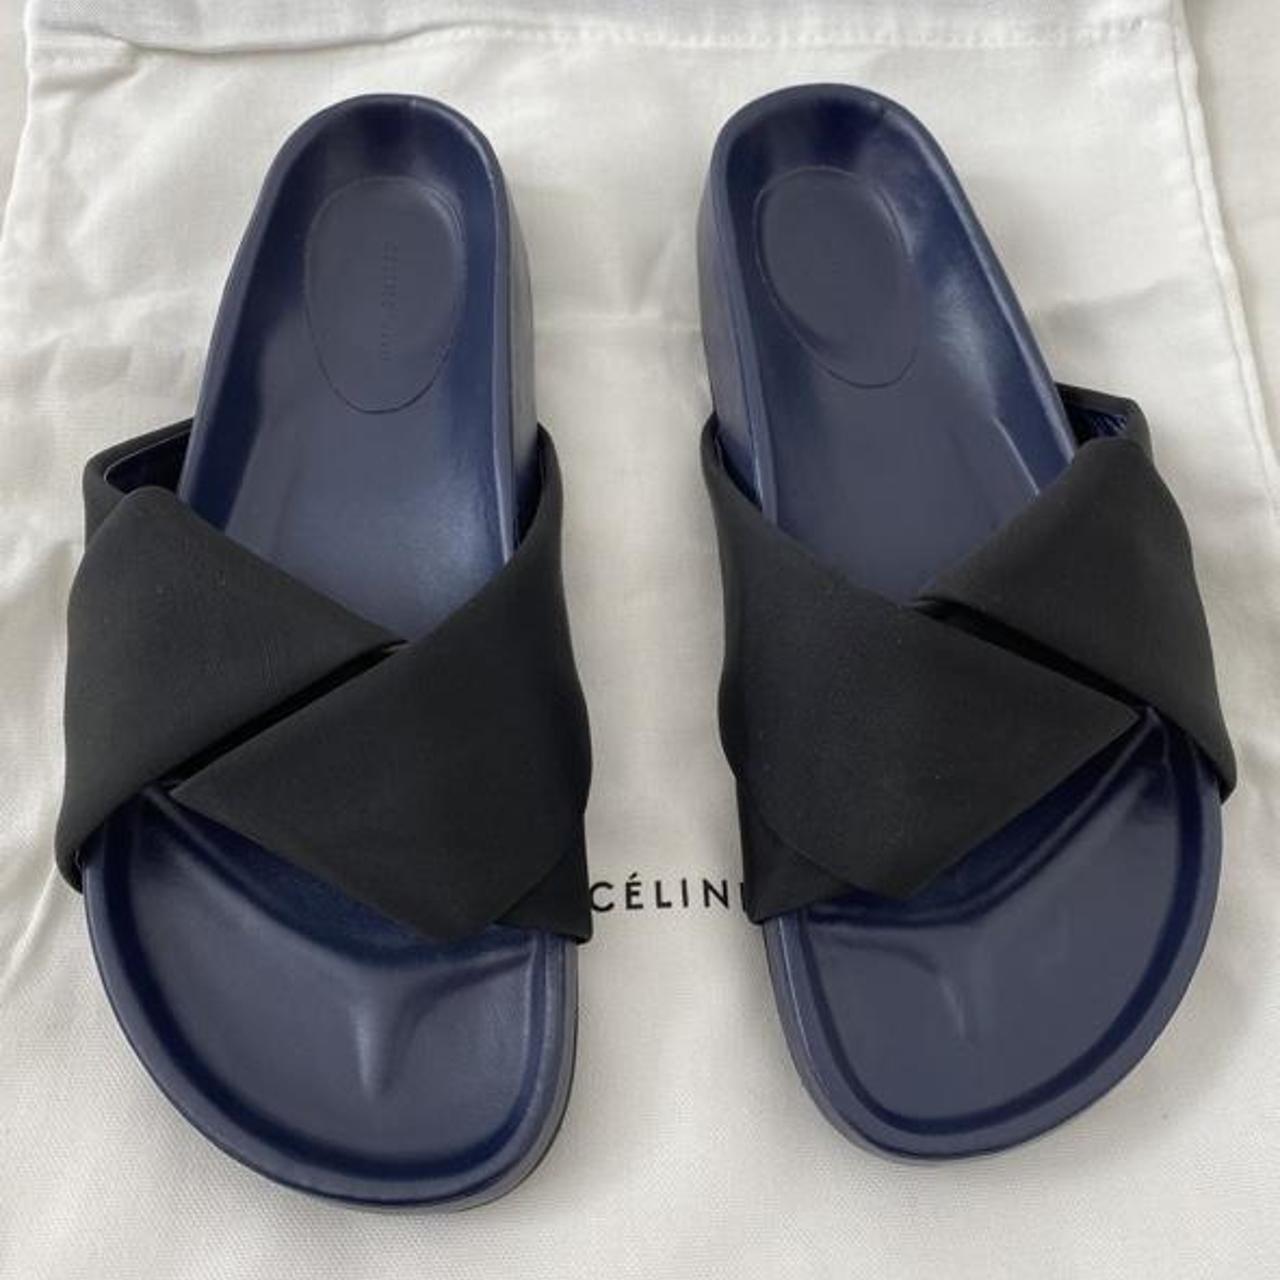 CELINE Women's Black and Blue Sandals | Depop